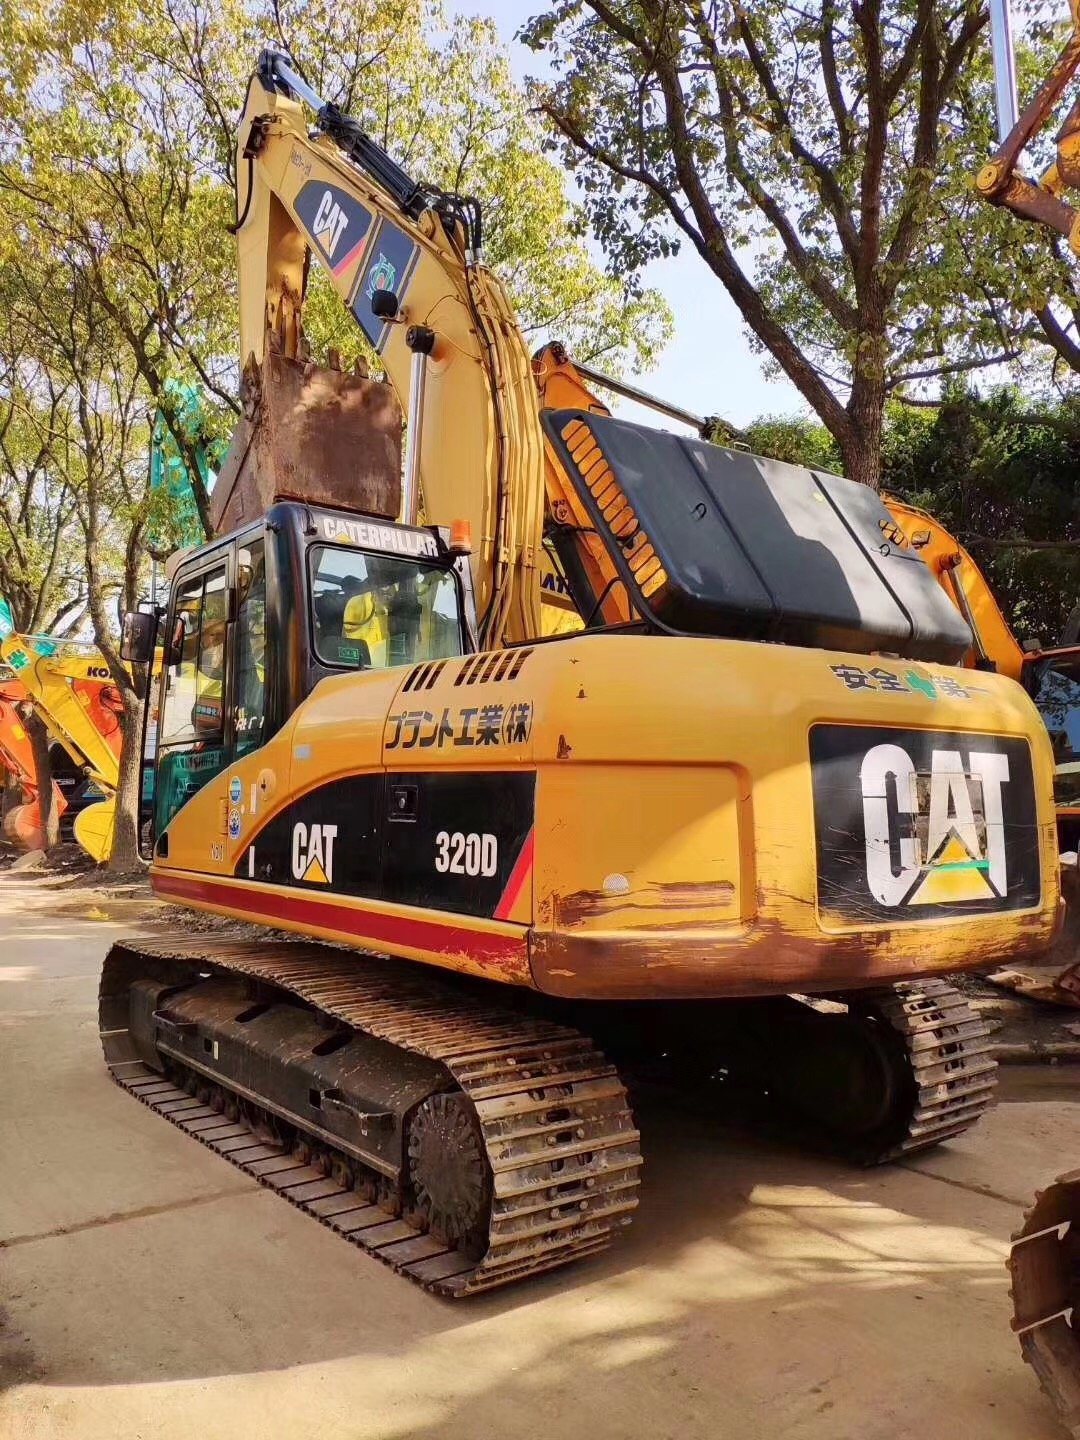 Used Cat 320d Crawler Excavator Caterpillar Excavator in Good Condition